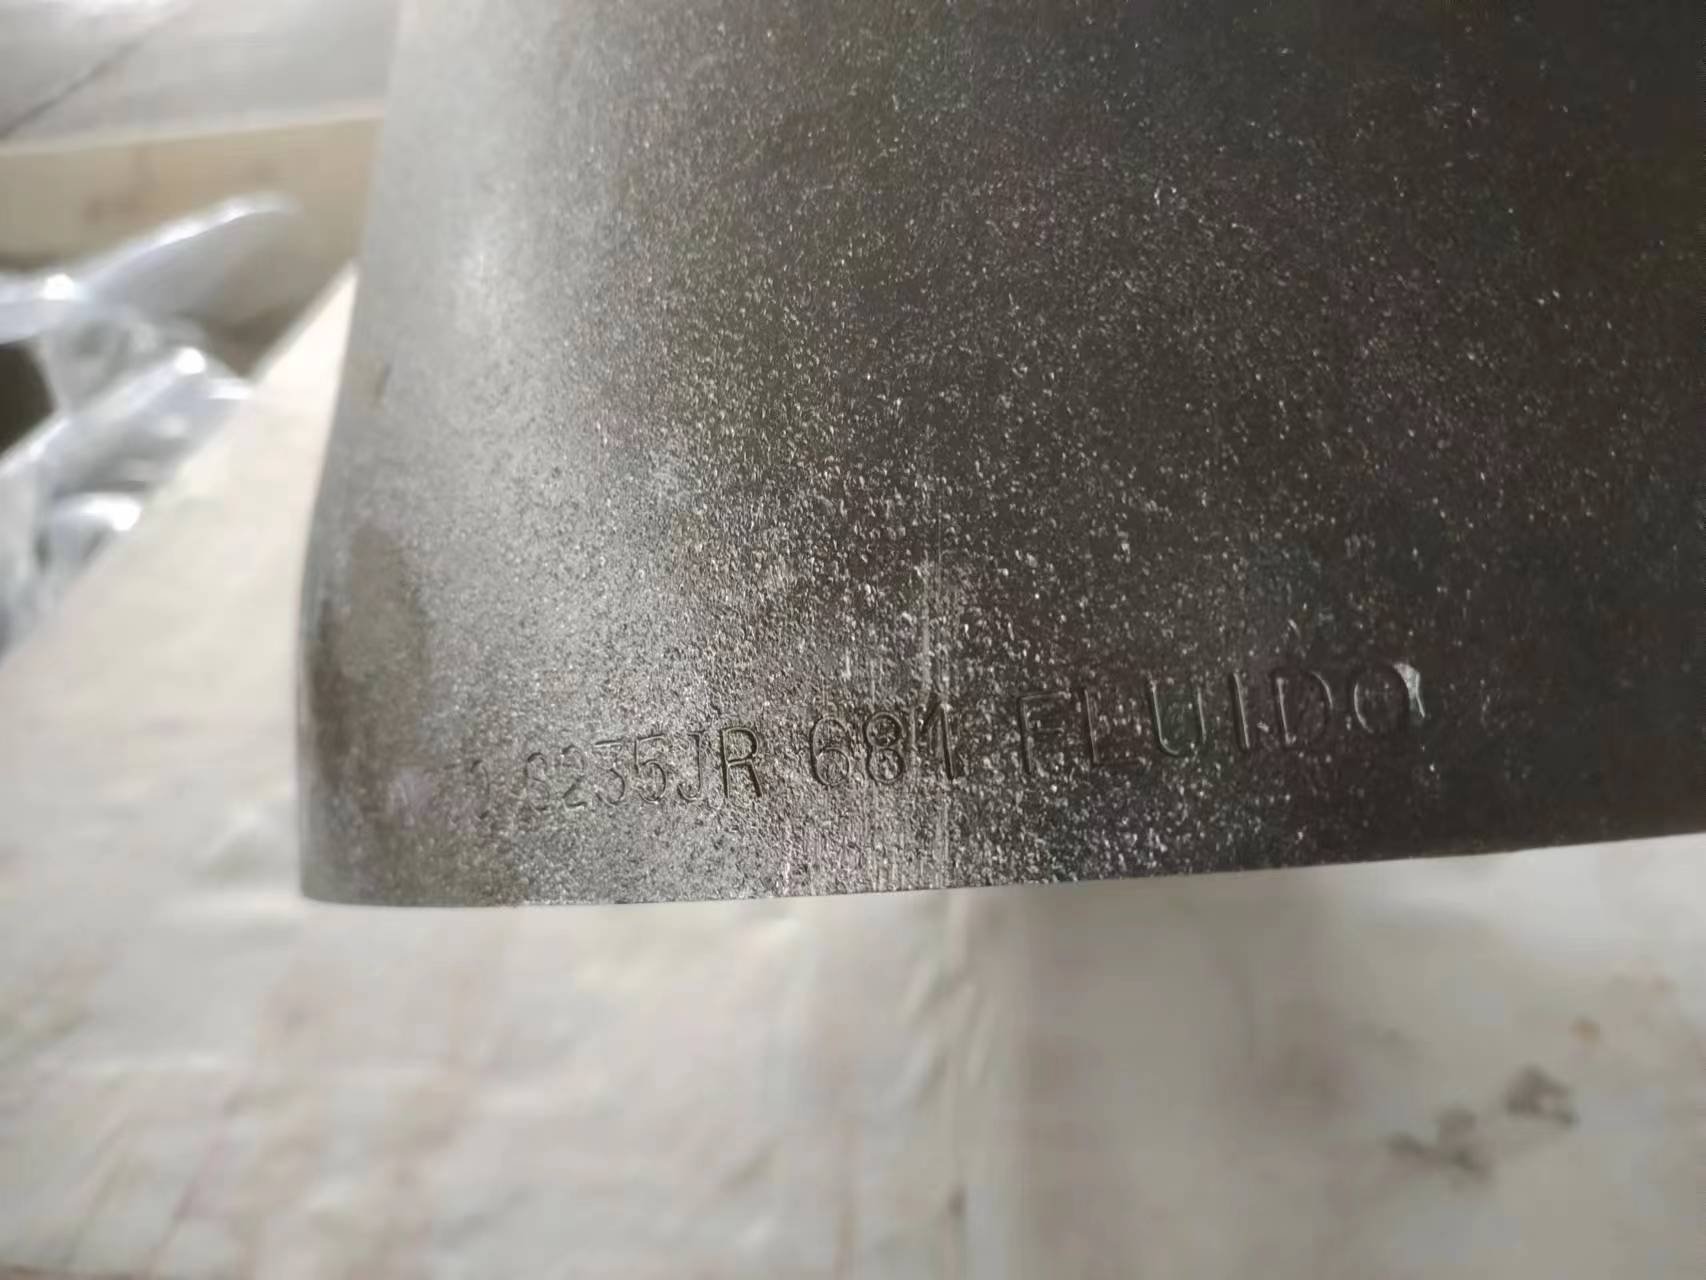 butt welding fittings inspection process